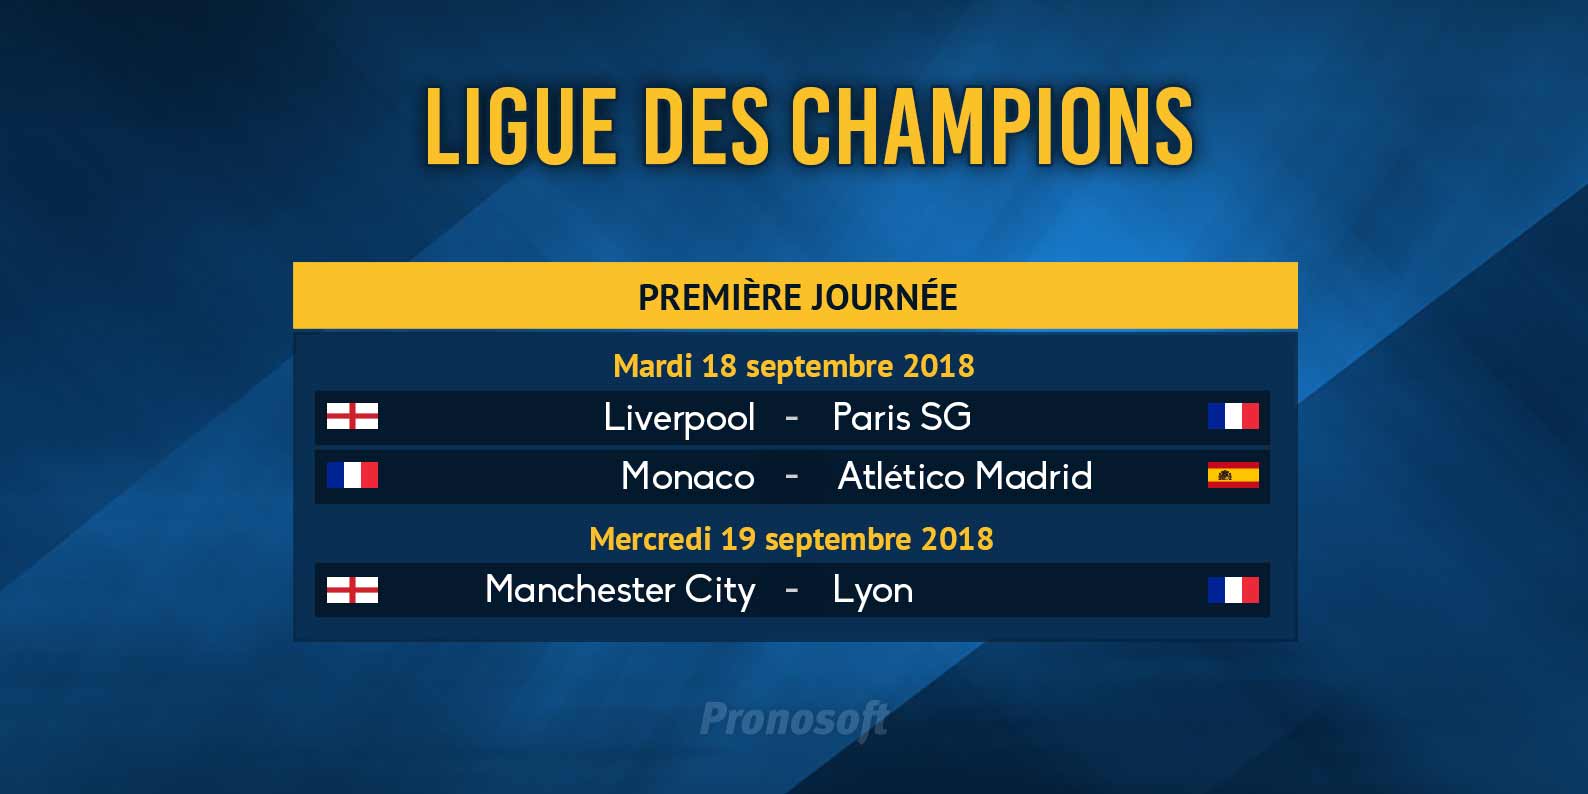 Ds la premire journe, les choses srieuses commencent en Ligue des Champions pour les clubs franais.